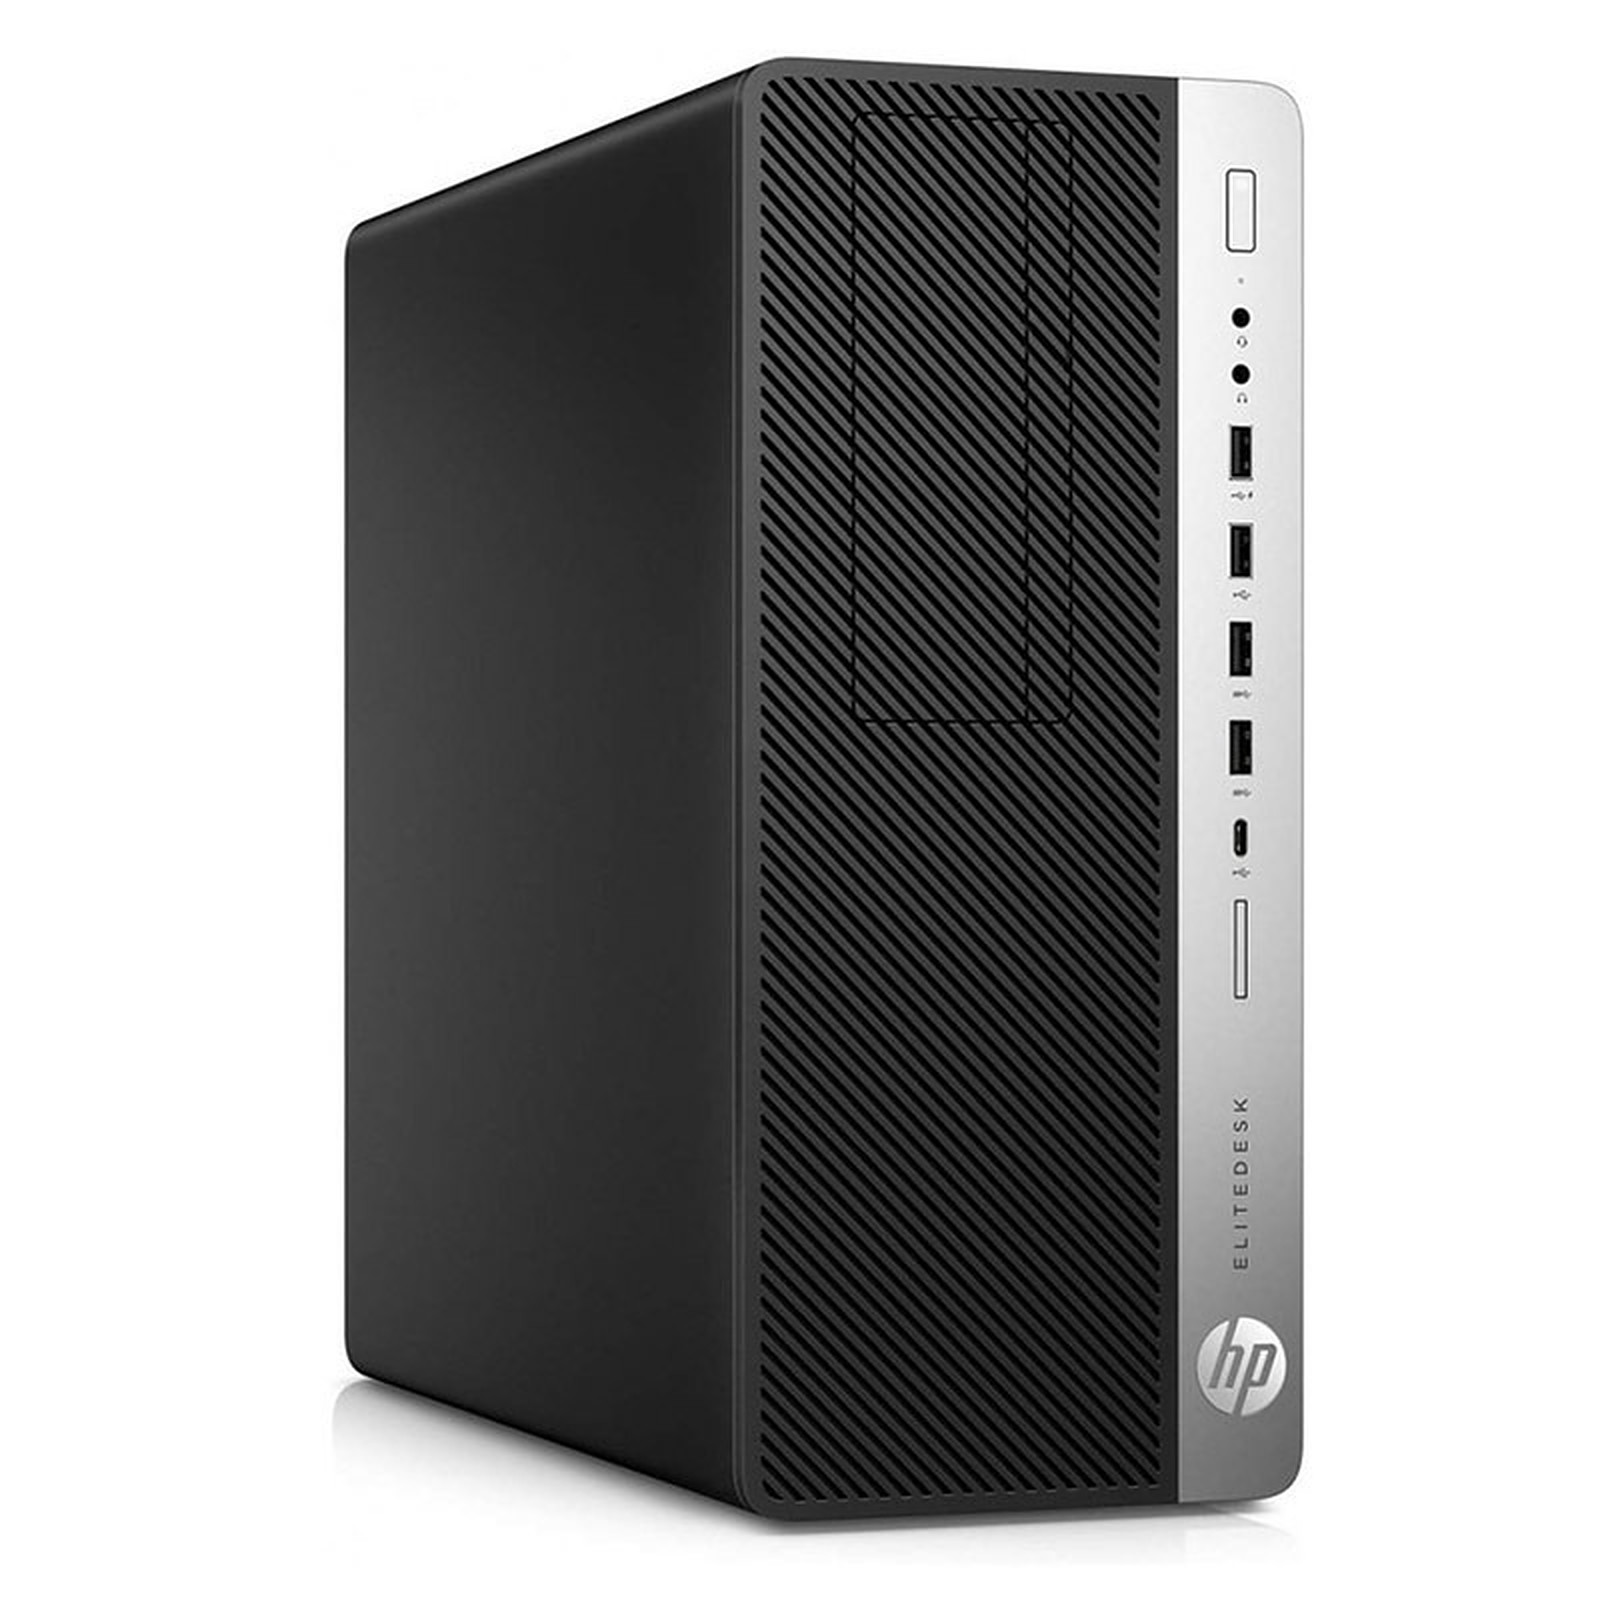 HP LPG-800G3 (I56516224S) · Reconditionne - PC de bureau reconditionne HP